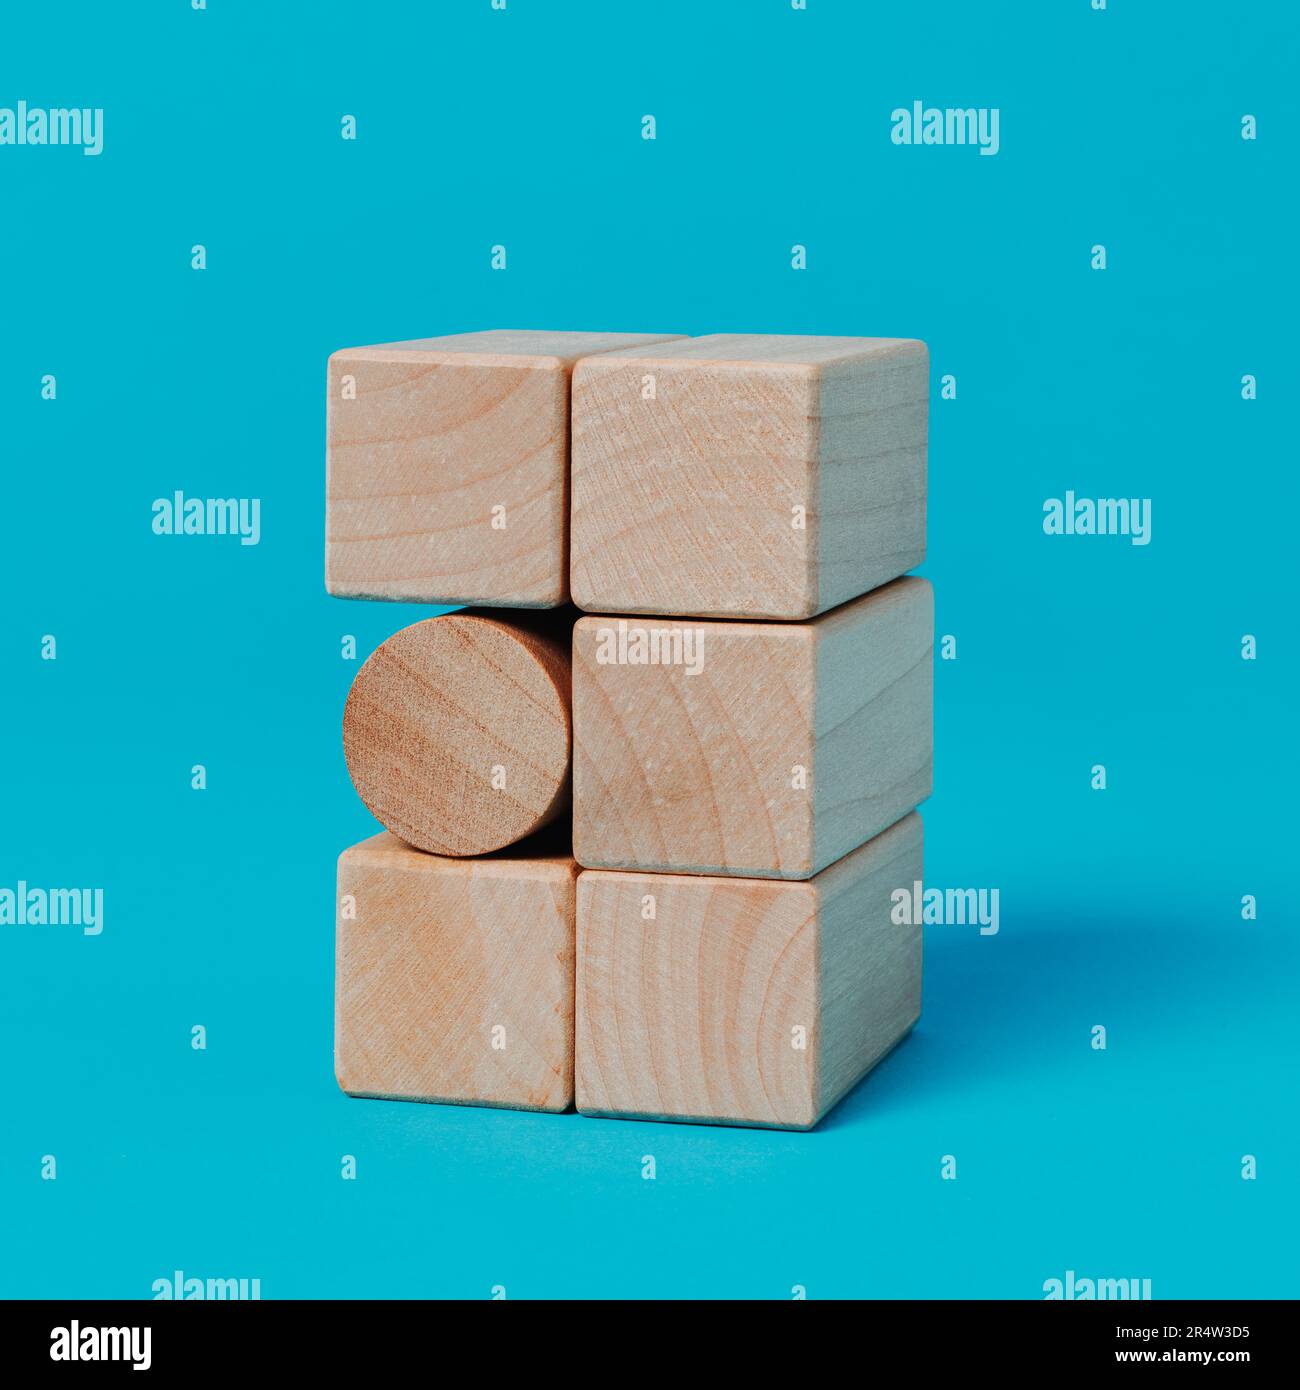 Ein zylindrischer Spielzeugblock in einem Stapel rechteckiger Spielzeugblöcke auf blauem Hintergrund im quadratischen Format Stockfoto